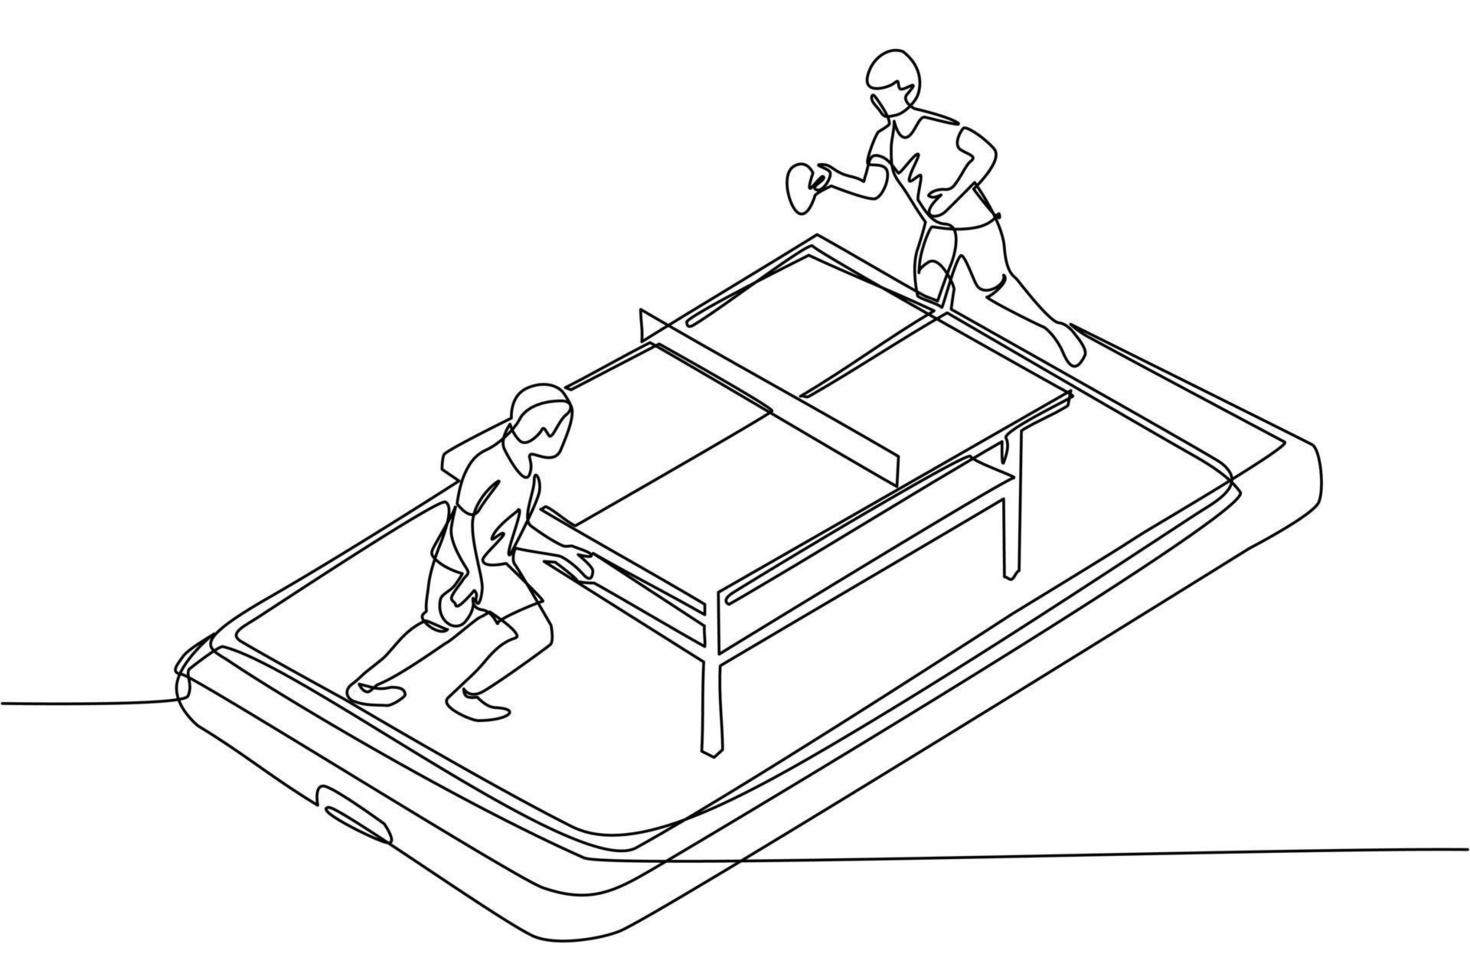 cancha de tenis de mesa de dibujo de una sola línea continua con dos jugadores en la pantalla del teléfono inteligente. jugadores de tenis de mesa de competición deportiva profesional durante el partido, aplicación móvil. vector de diseño de dibujo de una línea